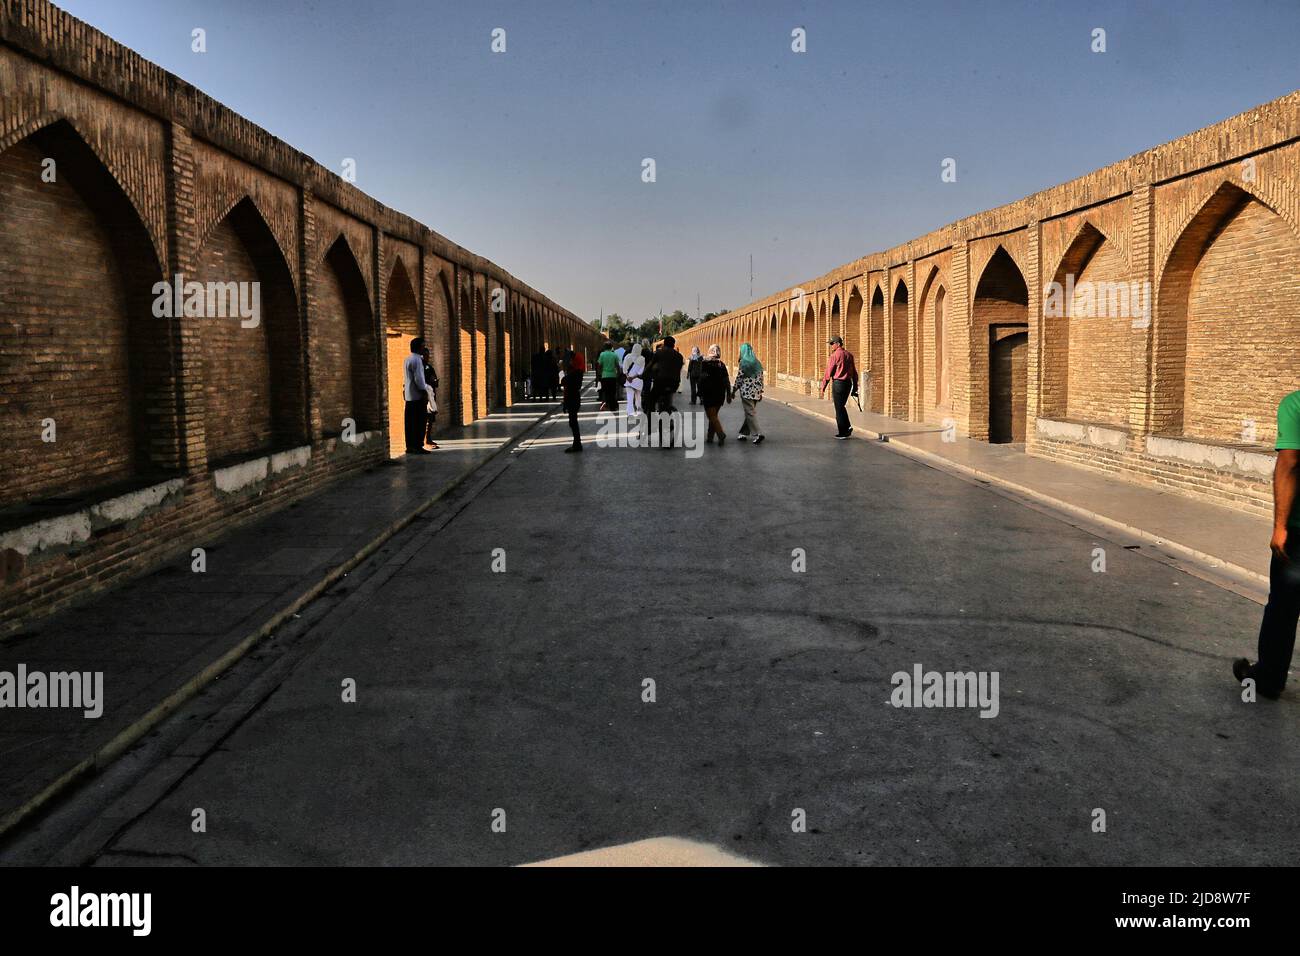 Allah-Verdi-Khan-Brücke in Isfahan, Iran. Auf persisch heißt sie Si-o-se Pol. Die Brücke hat zwei Etagen und überspannt den Zayandeh Rud. Die Brücke hat 33 Bögen und ist für den Autoverkehr gesperrt Stock Photo